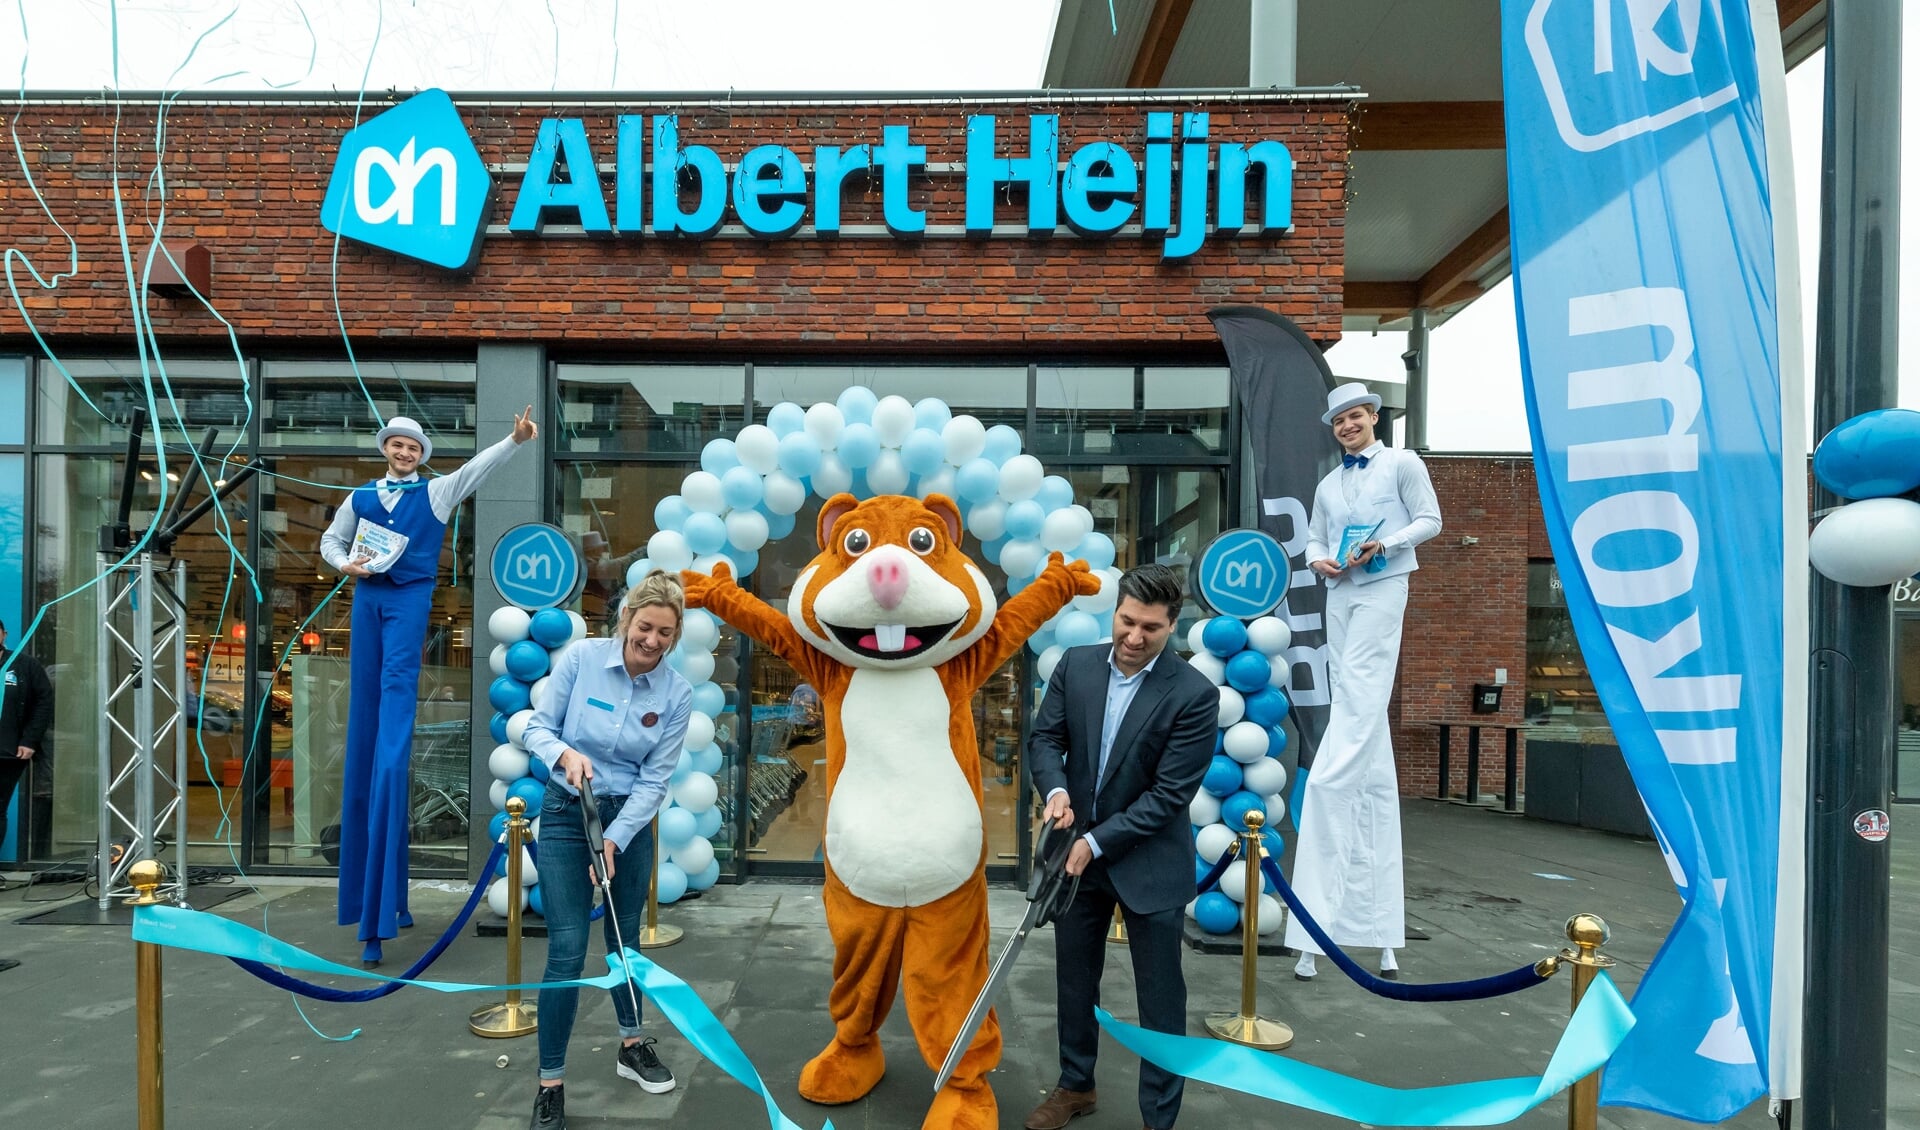 De Albert Heijn ging feestelijk open. (Foto: Albert Heijn/Yasmin Hargreaves)